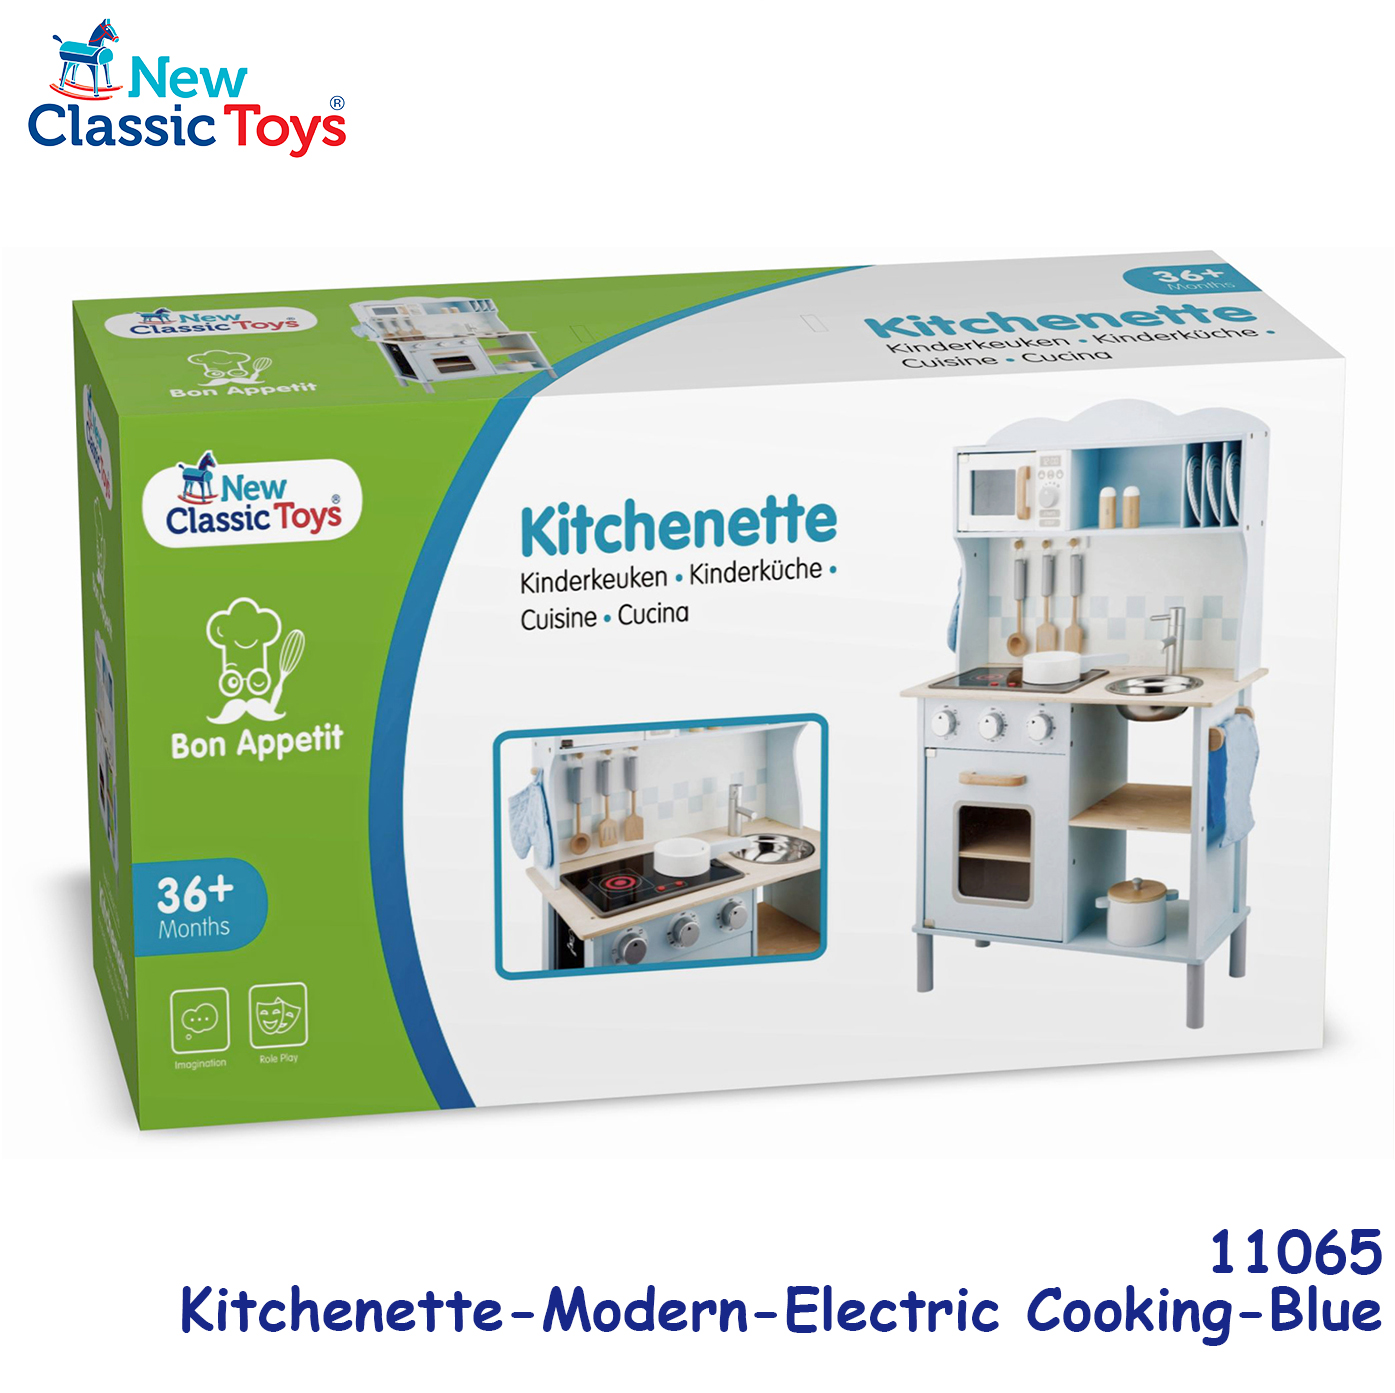 New Classic Toys - 木製聲光粉藍色廚房系列套裝玩具 #11065 5